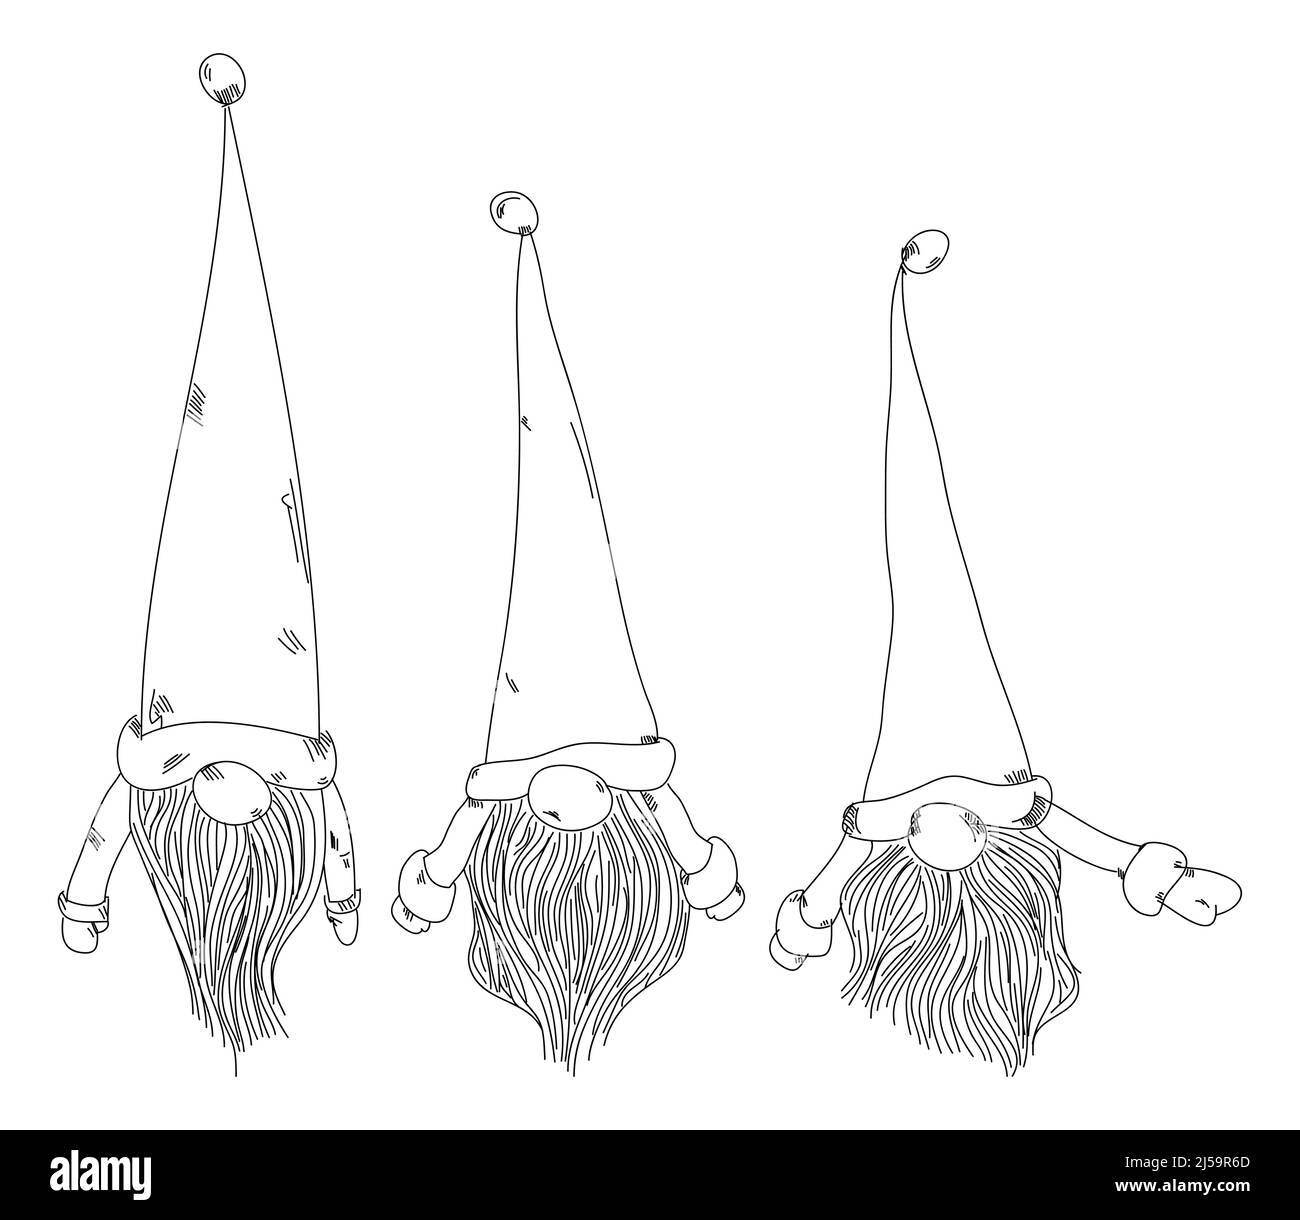 Gnome scandinavo con cappello e barba grande, illustrazione di linea di scorta. Illustrazione Vettoriale